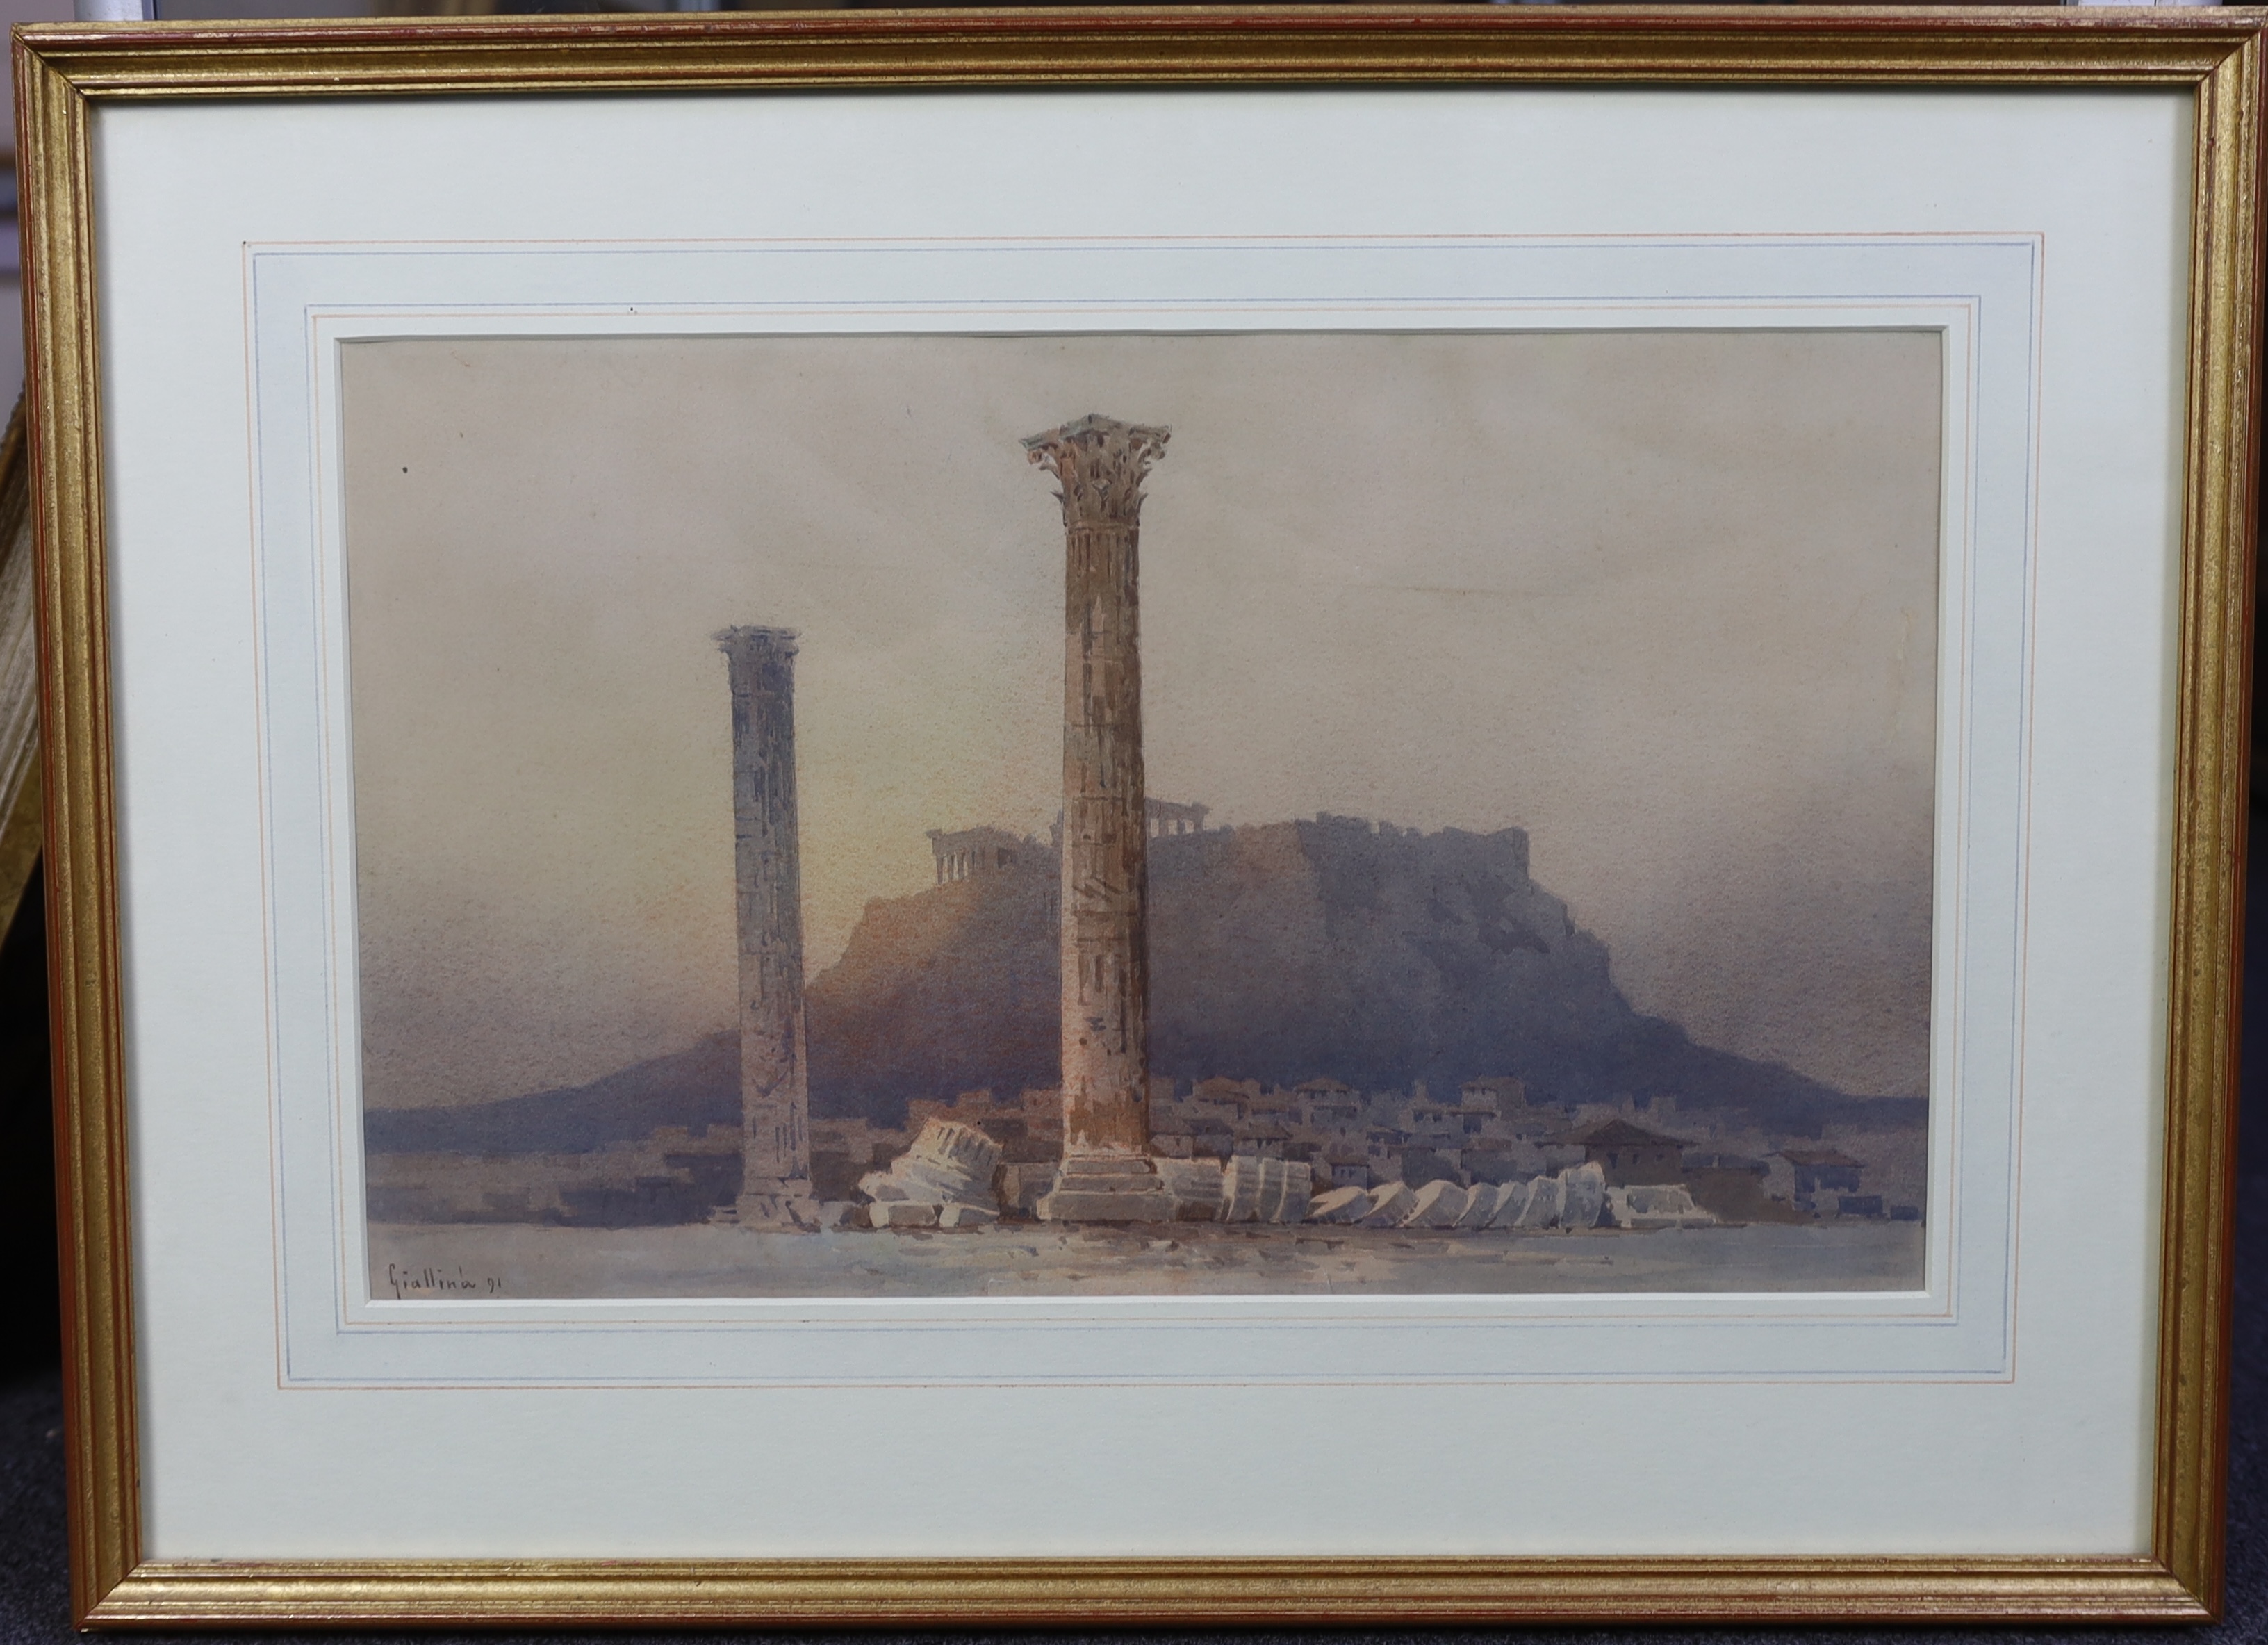 Angelos Giallina (Greek, 1857-1939), The Acropolis at Athens, watercolour, 36.5 x 44cm